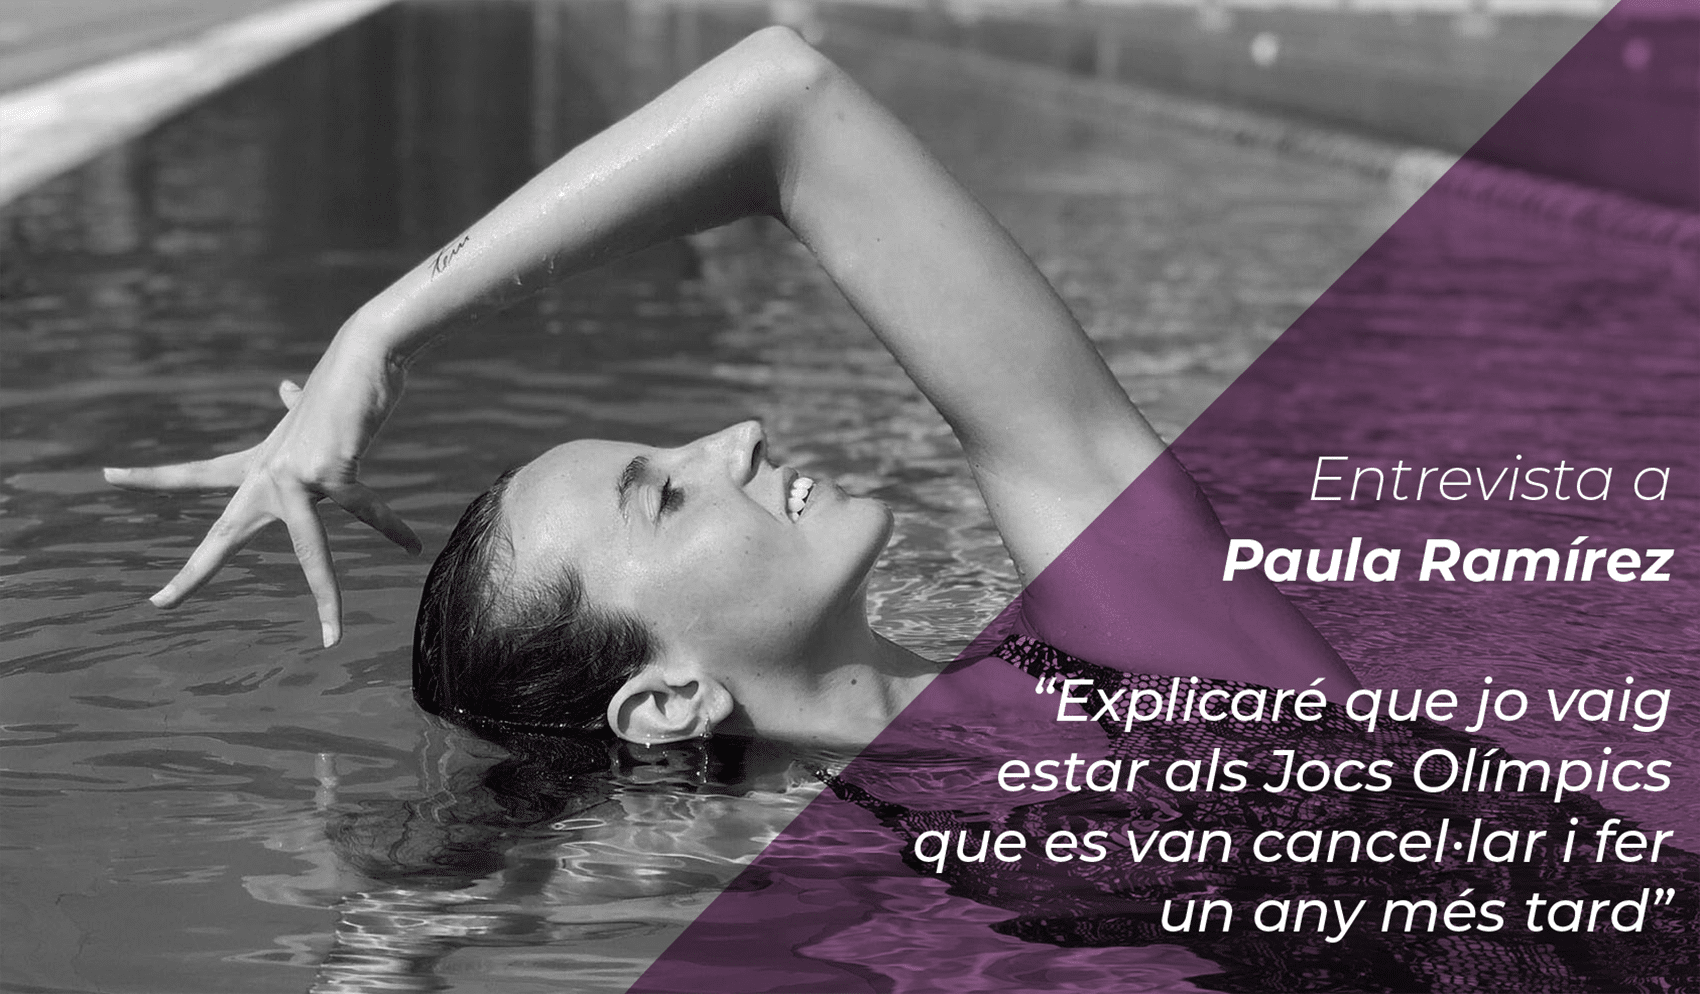 Paula Ramirez: “Explicaré que jo vaig estar als Jocs Olímpics que es van cancel·lar i fer un any més tard” 2